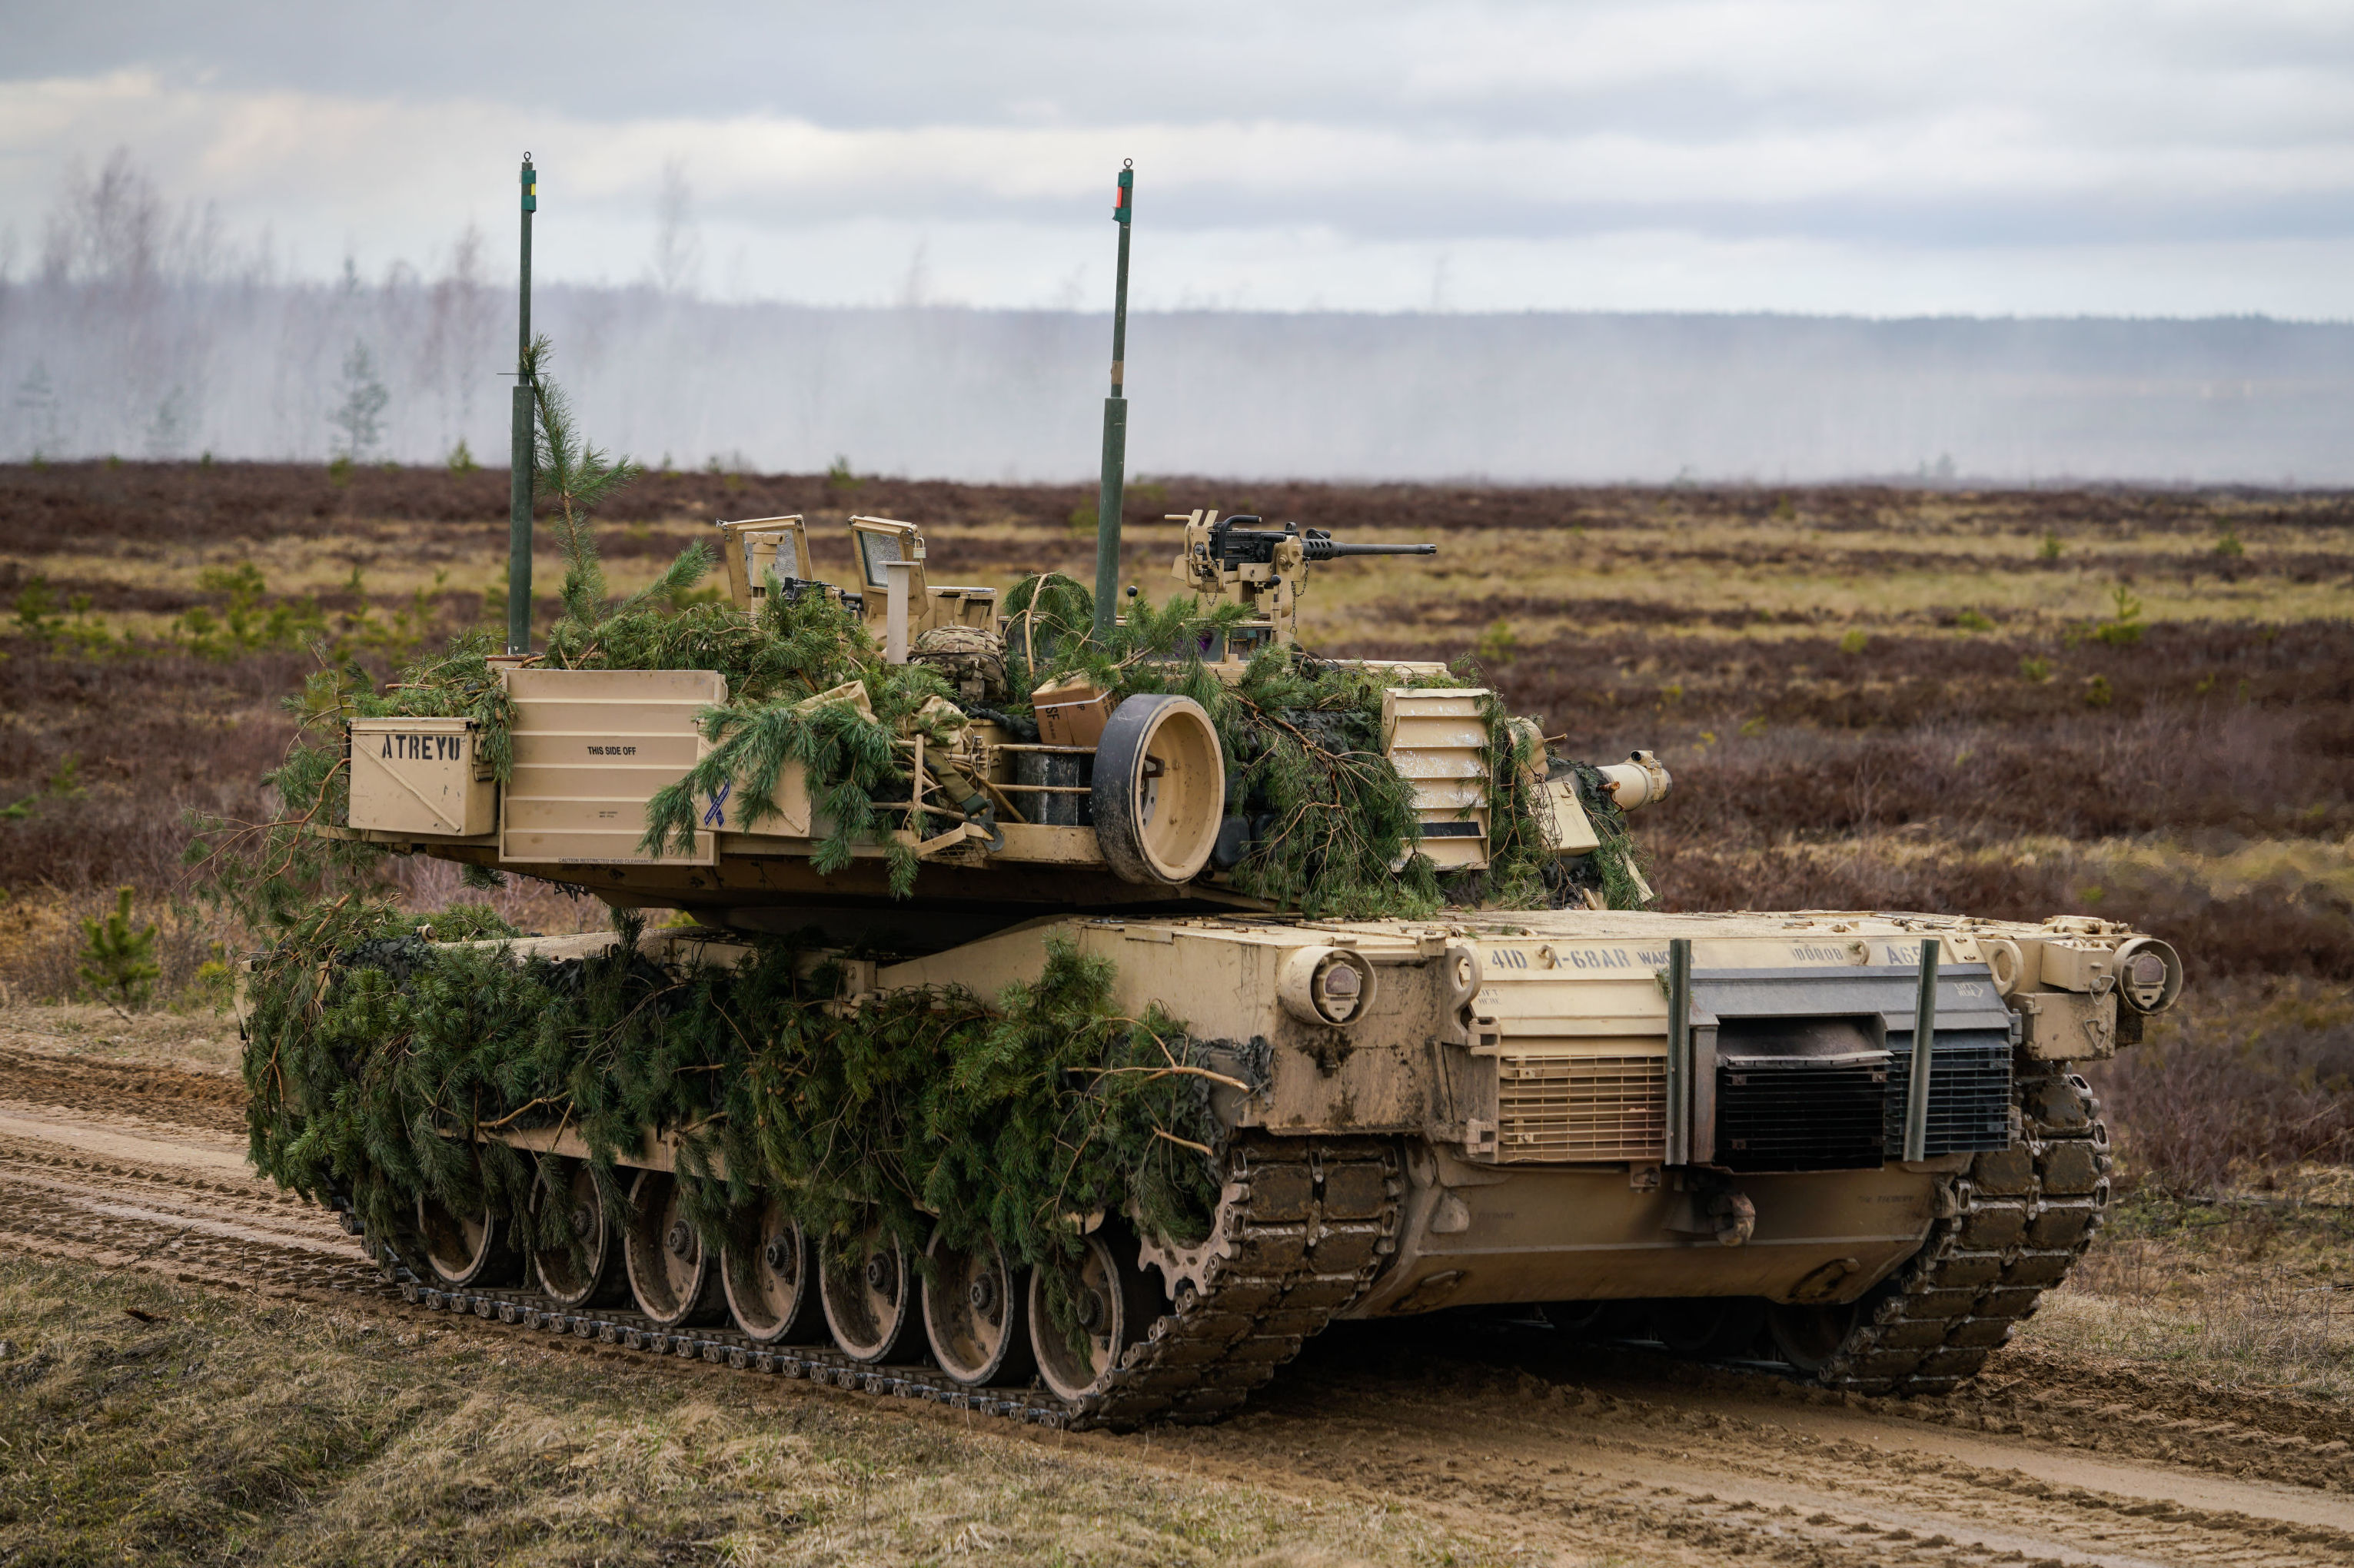 Танк M1 Abrams на международных военных учениях "Summer Shield XIV" в Латвии.